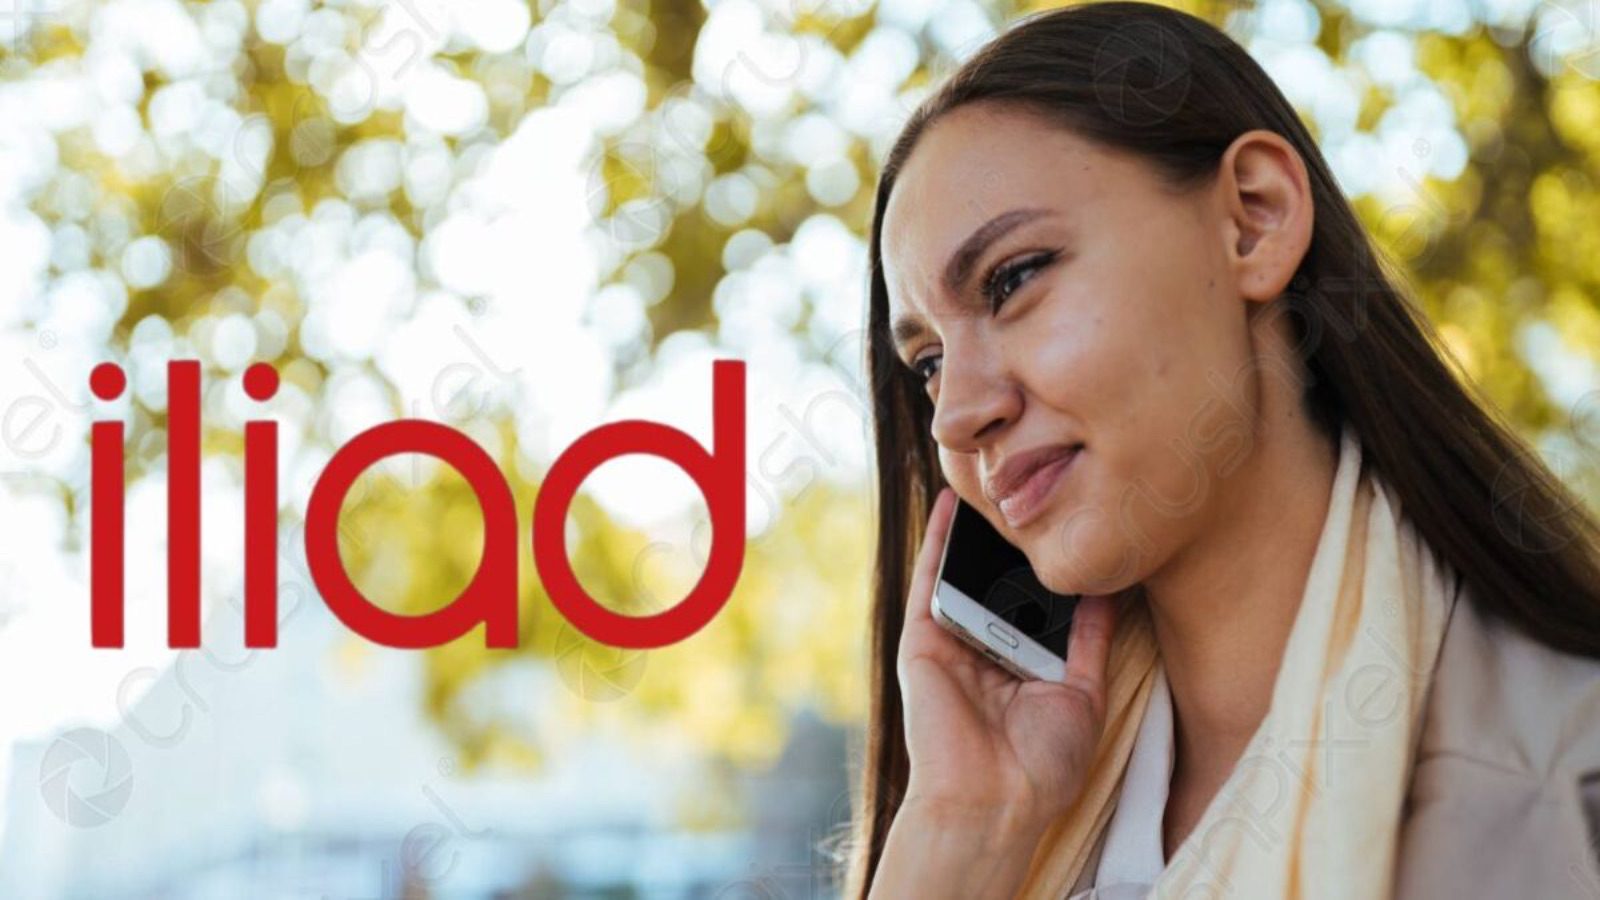 Iliad abbatte Vodafone e TIM con un servizio amatissimo dagli utenti